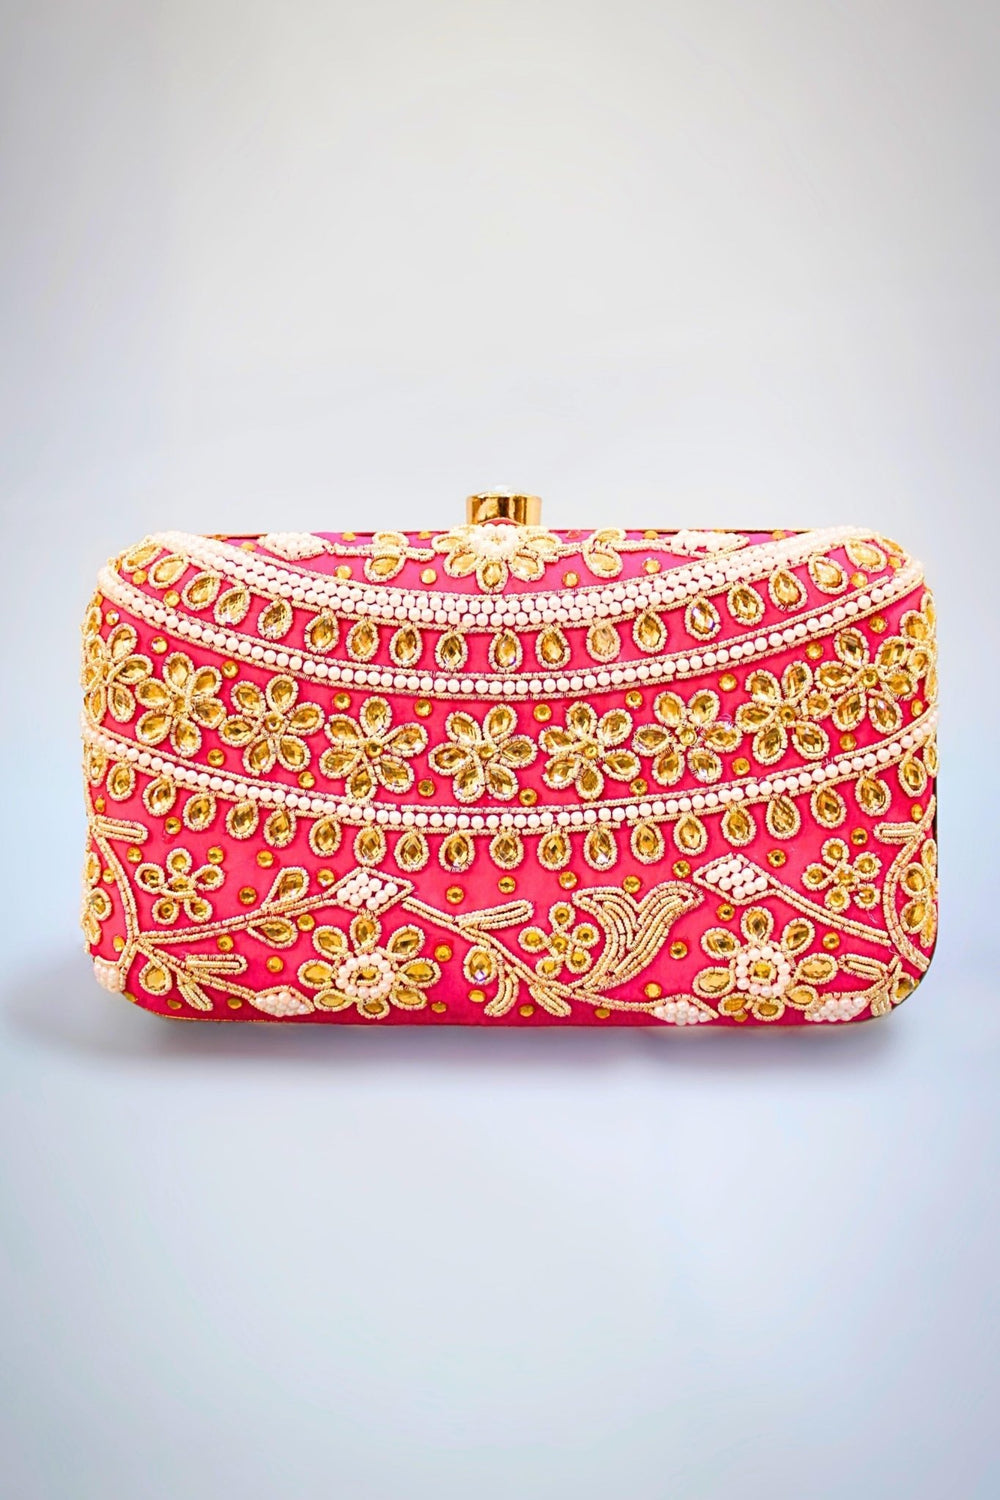 pink clutch - hot pink clutch - pink clutch purse